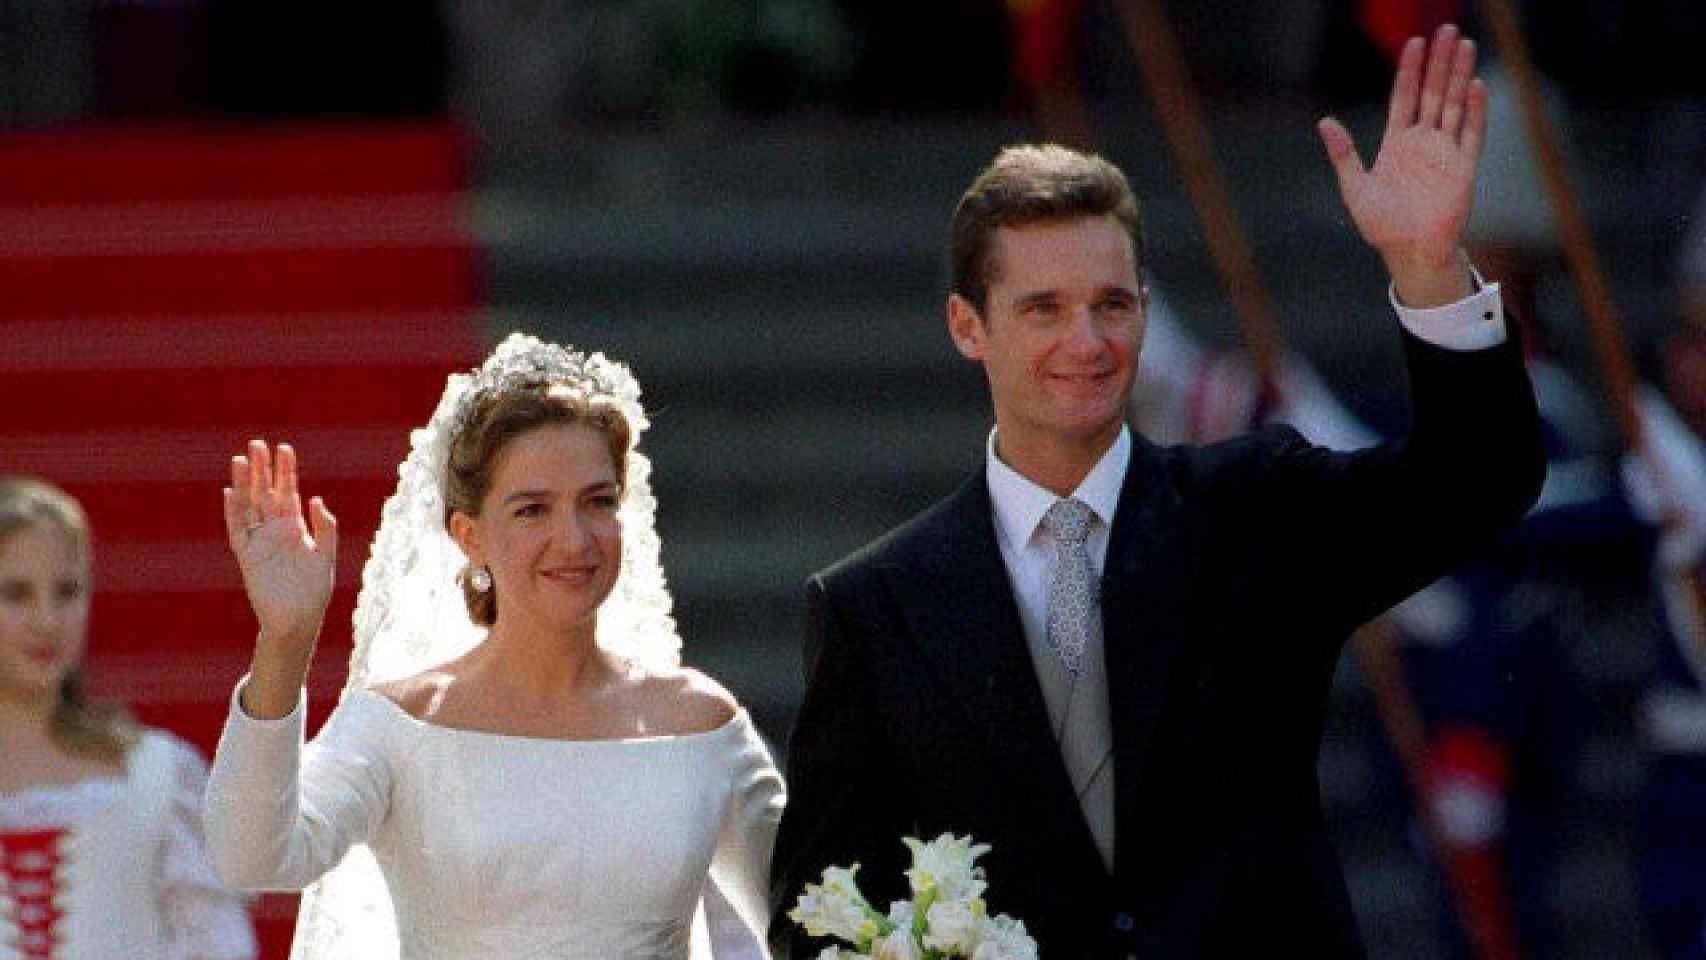 Imagen de la boda de la Infanta Cristina con Iñaki Urdangarin el 4 de octubre de 1997 en Barcelona.